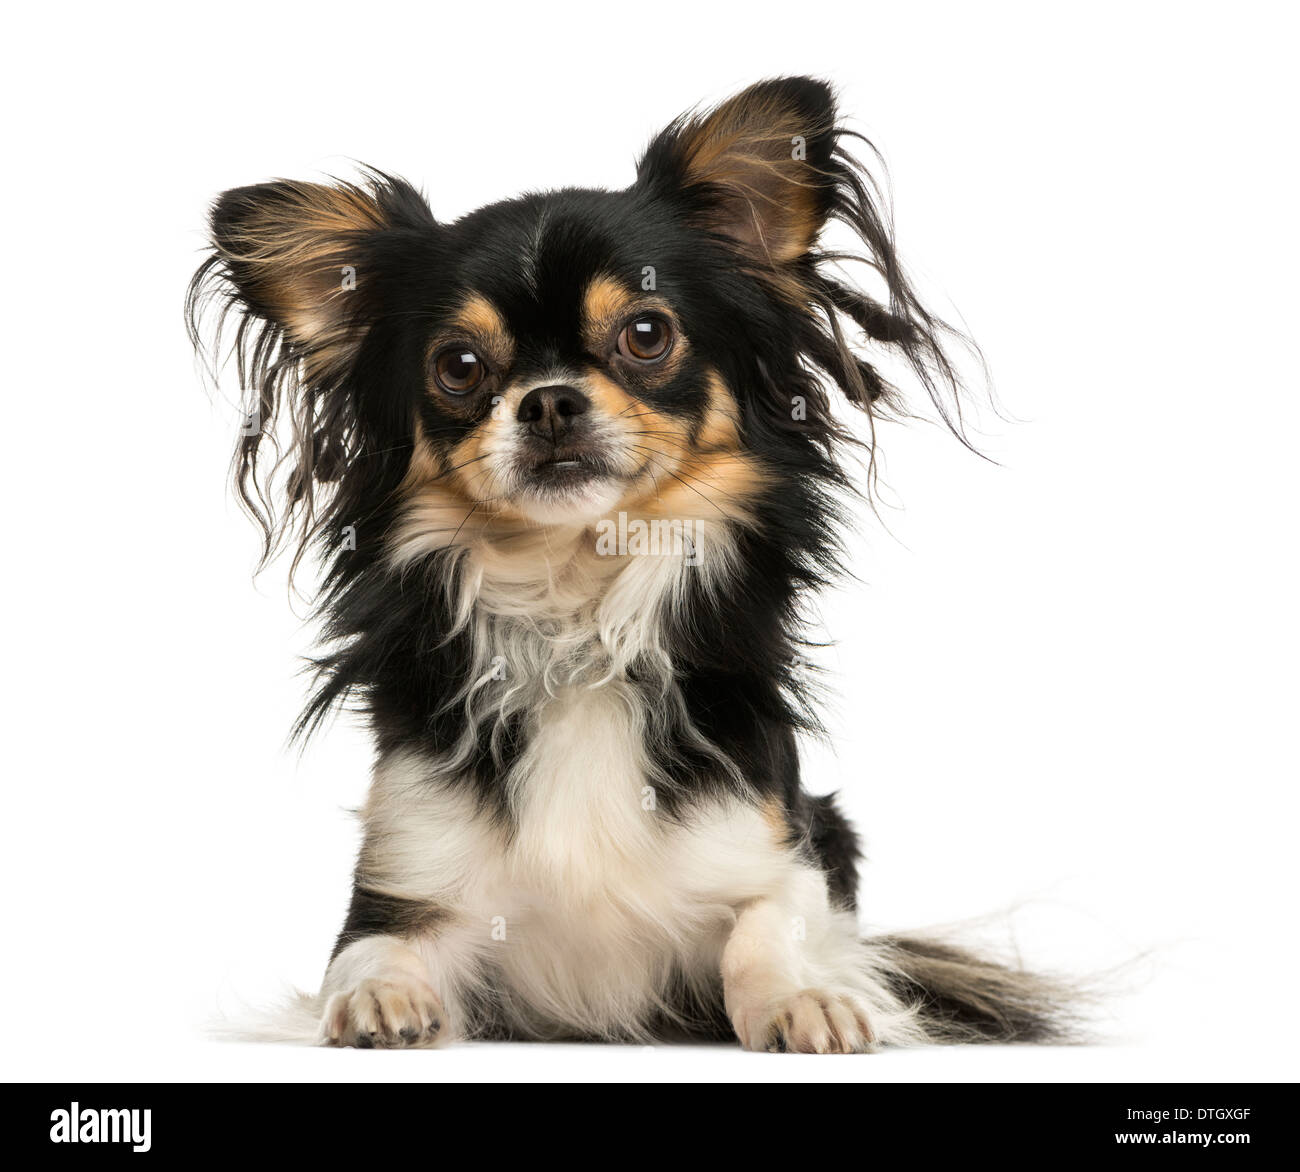 Vue frontale d'un shaggy Chihuahua couché contre fond blanc Banque D'Images